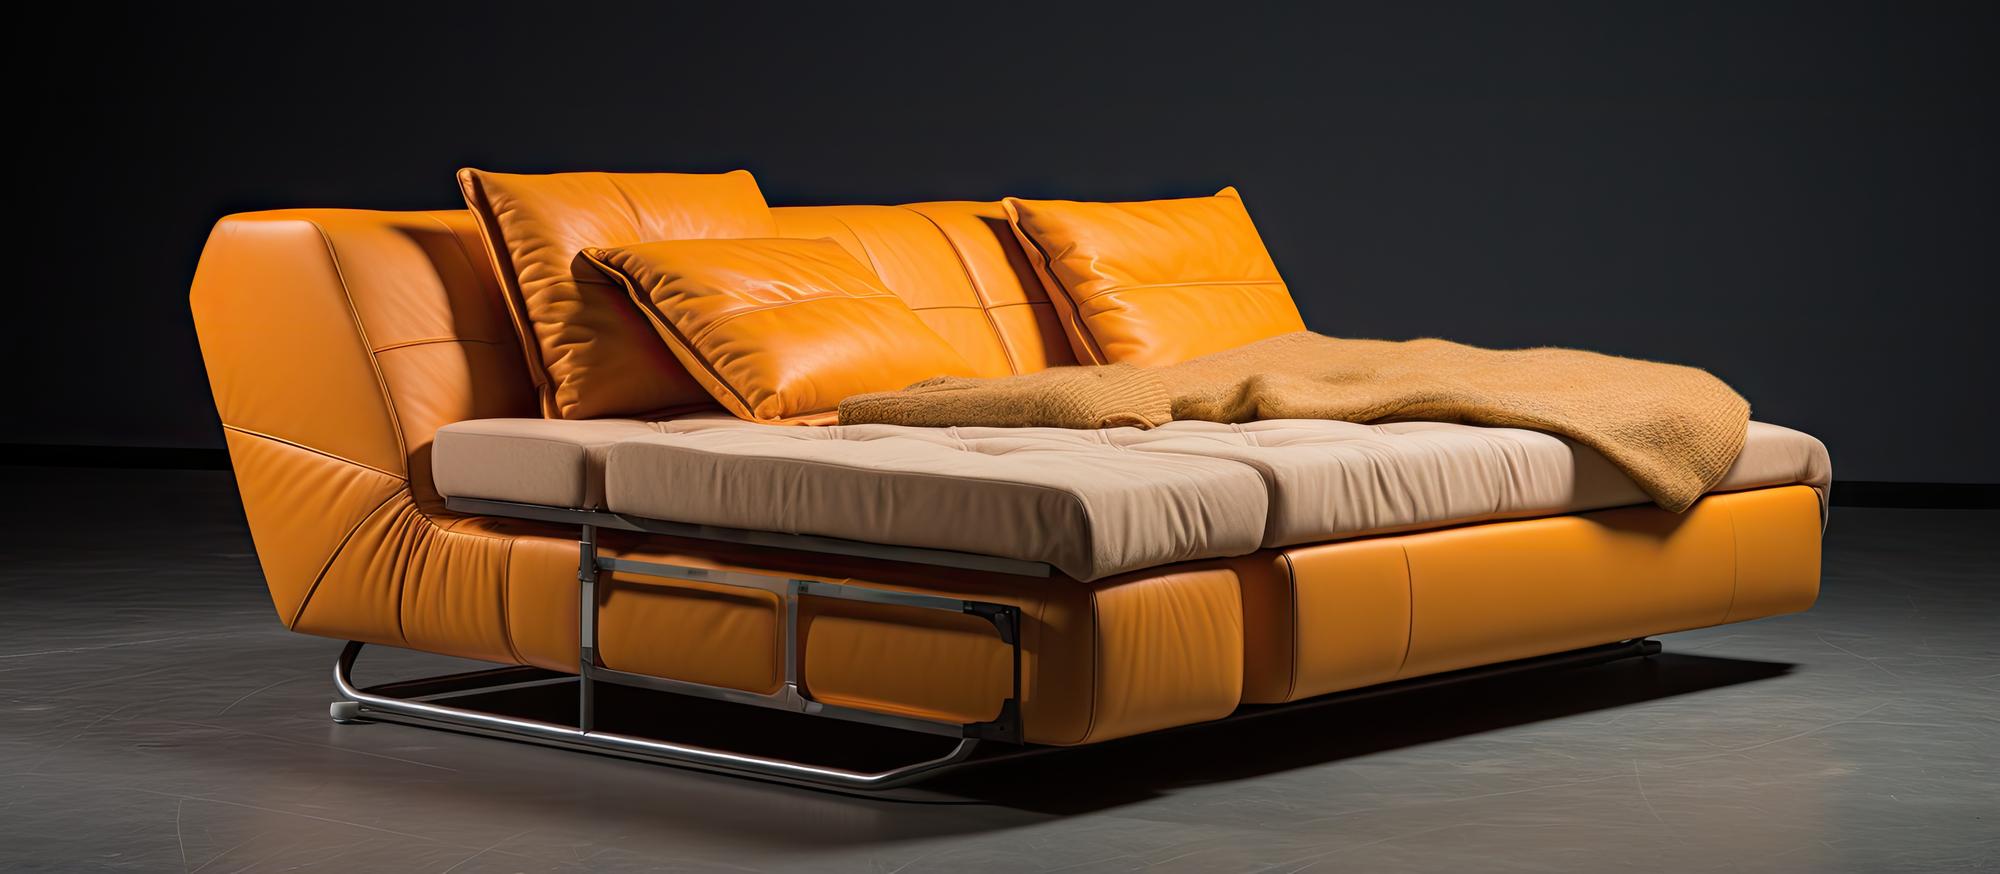 sofa-z-materacem-i-pojemnikiem-na-poscie-komfort-i-styl